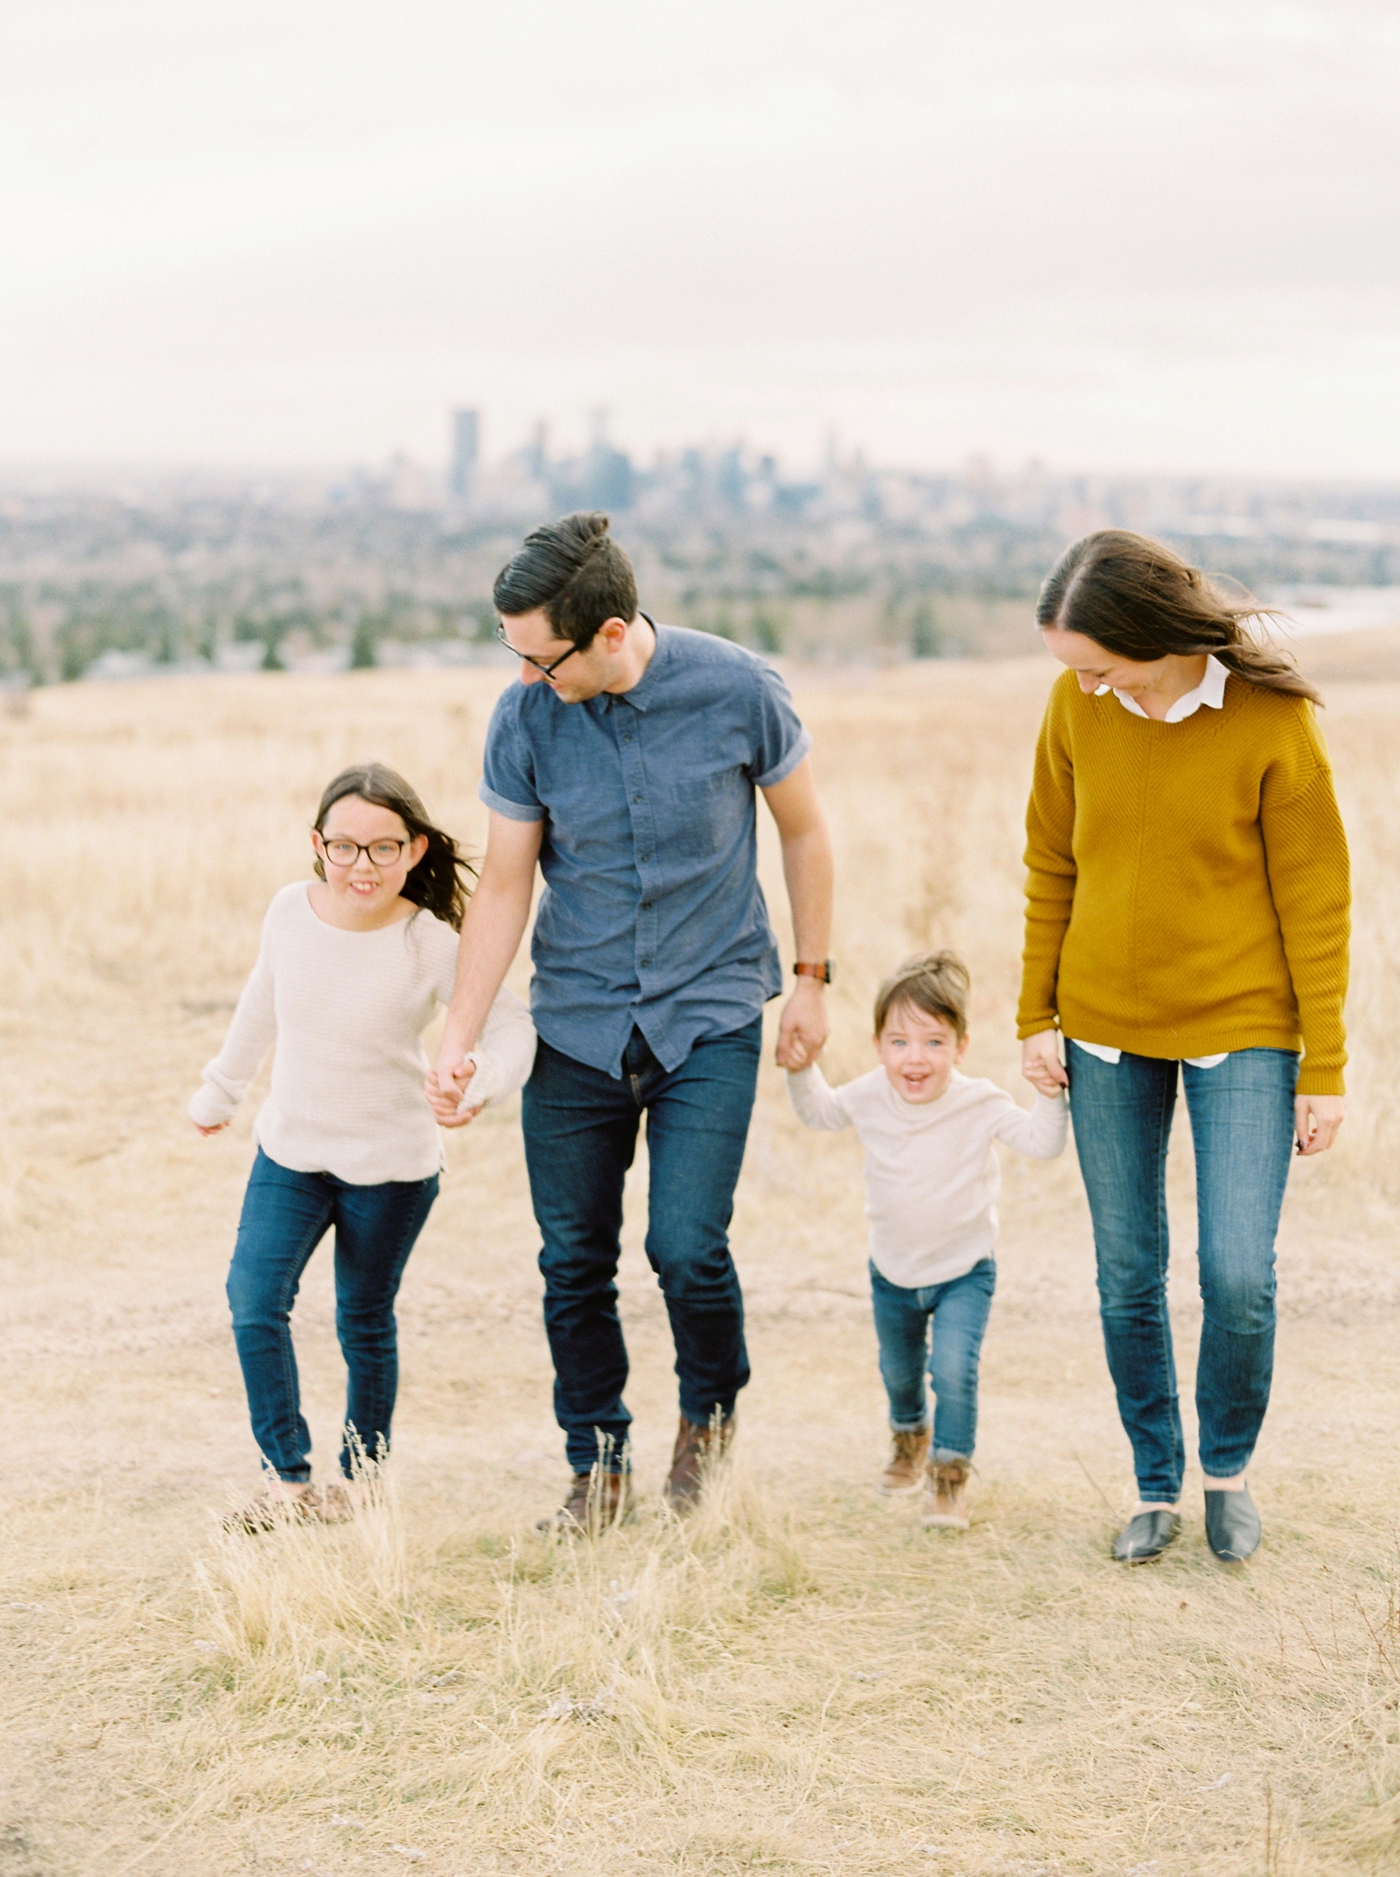 Fall family photographers | Calgary fine art family photographer | Justine Milton Photography